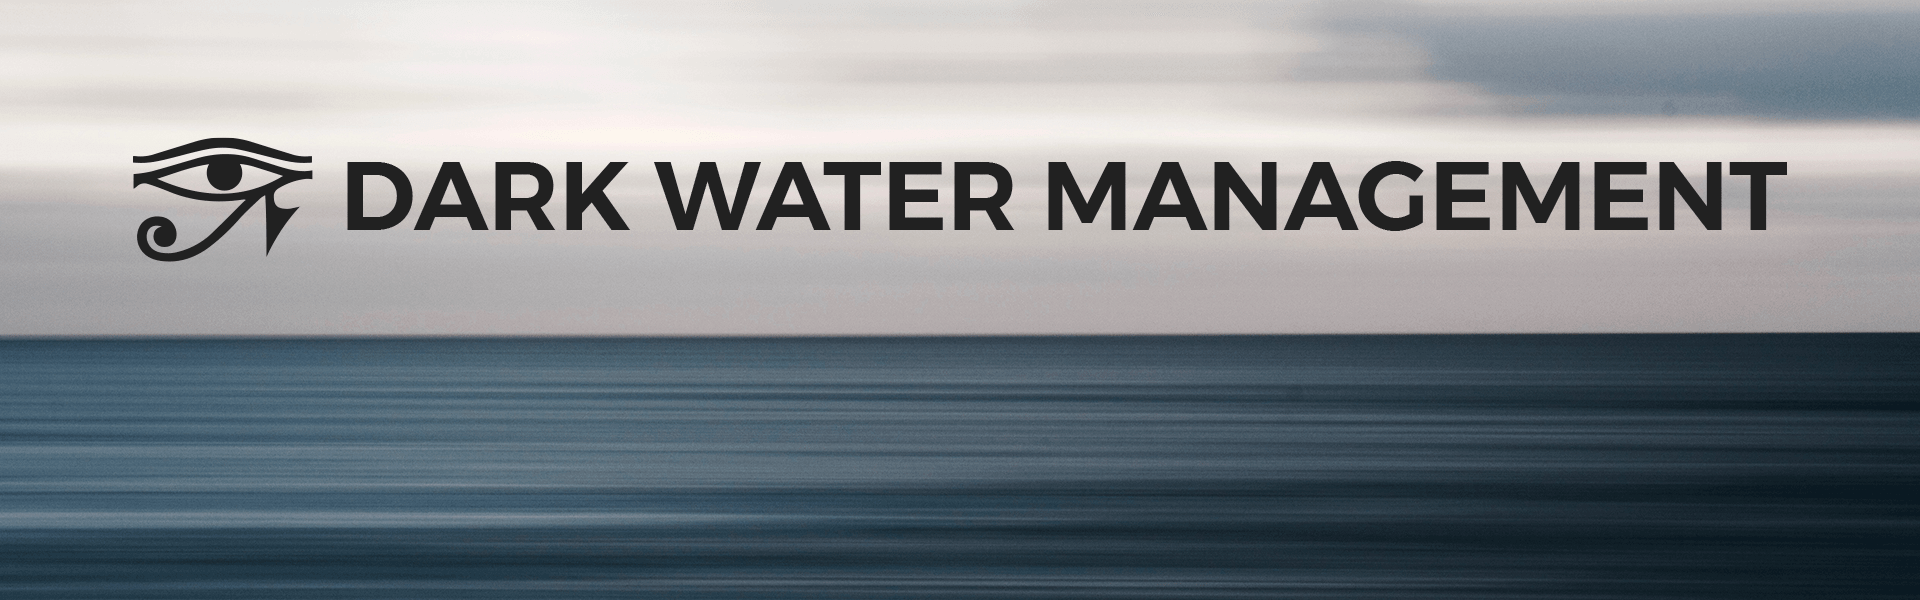 Dark Water Management